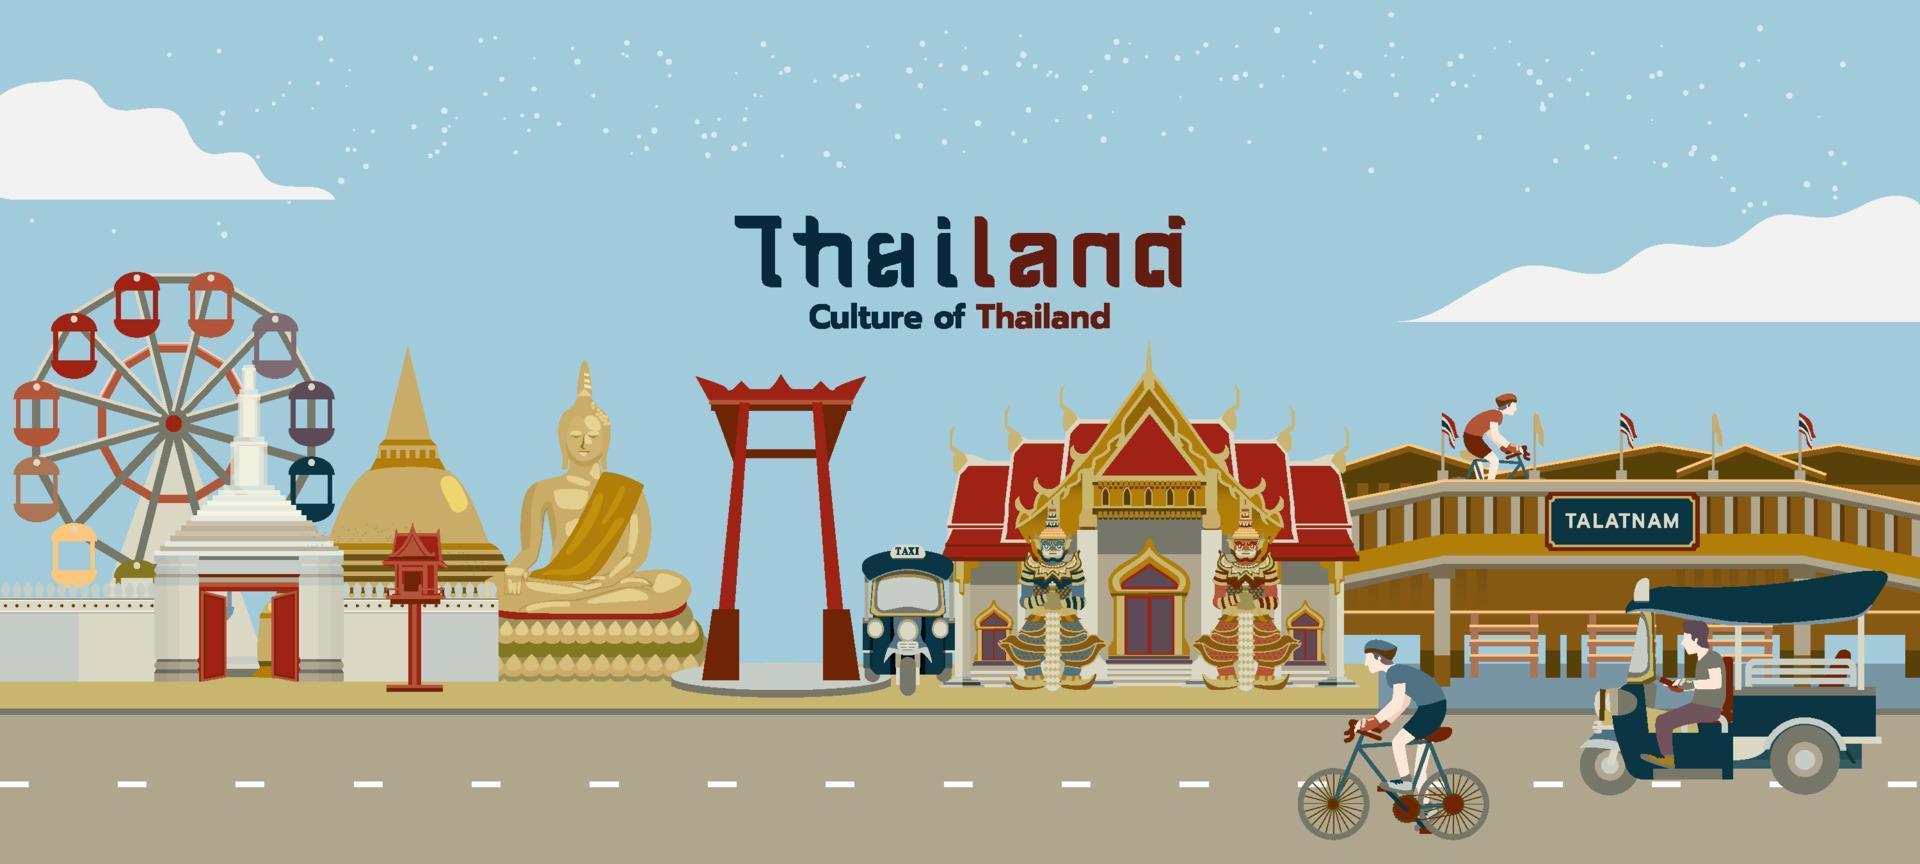 conjunto de edificios y construcciones tailandeses viajan en bicicleta tuktuk elemento ilustración vectorial plana. vector